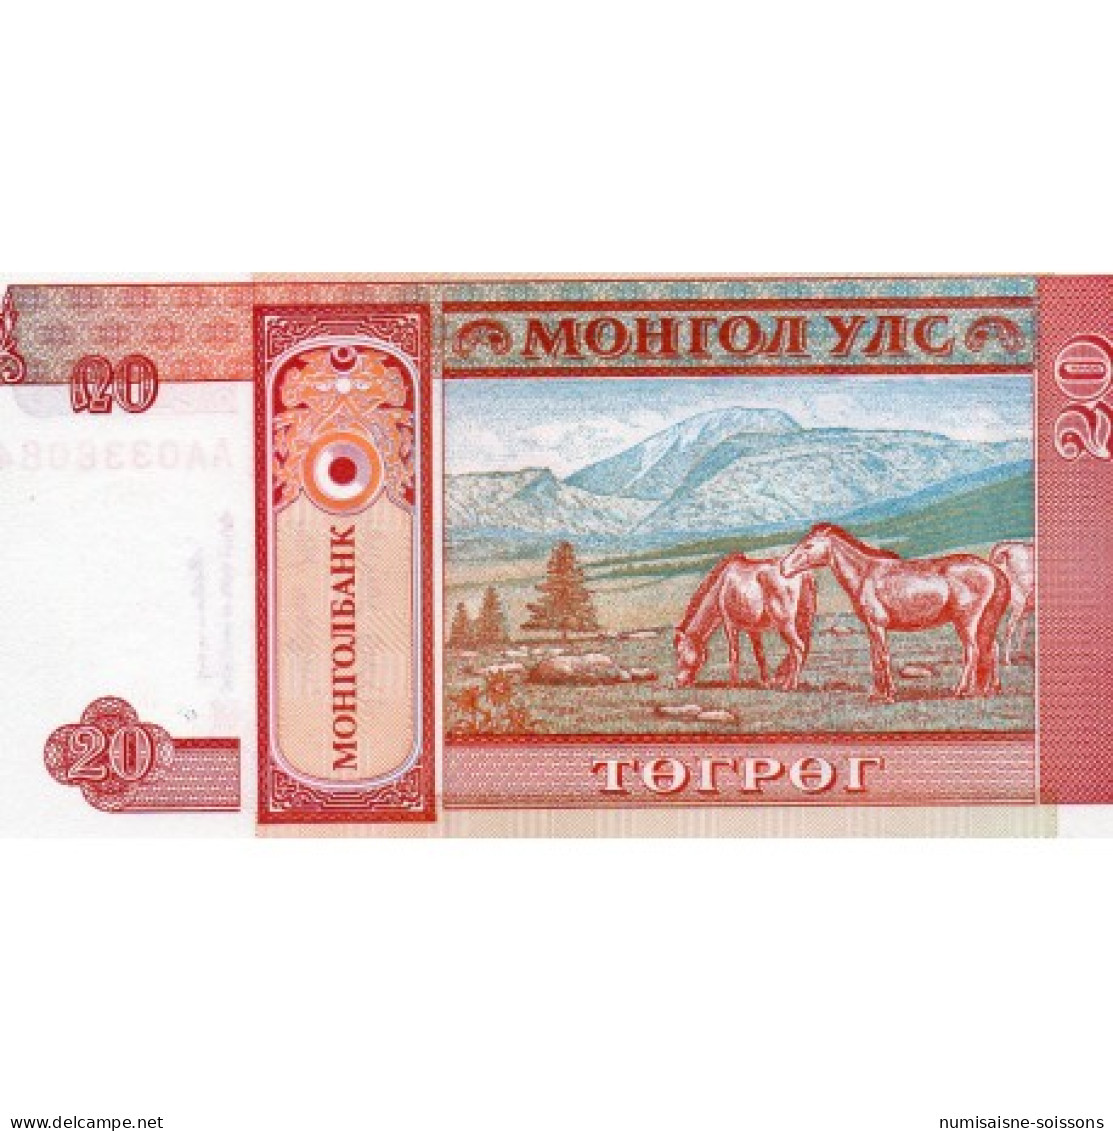 MONGOLIE - PICK 55 - 20 TUGRIK - NON DATÉ (1993) - Mongolie